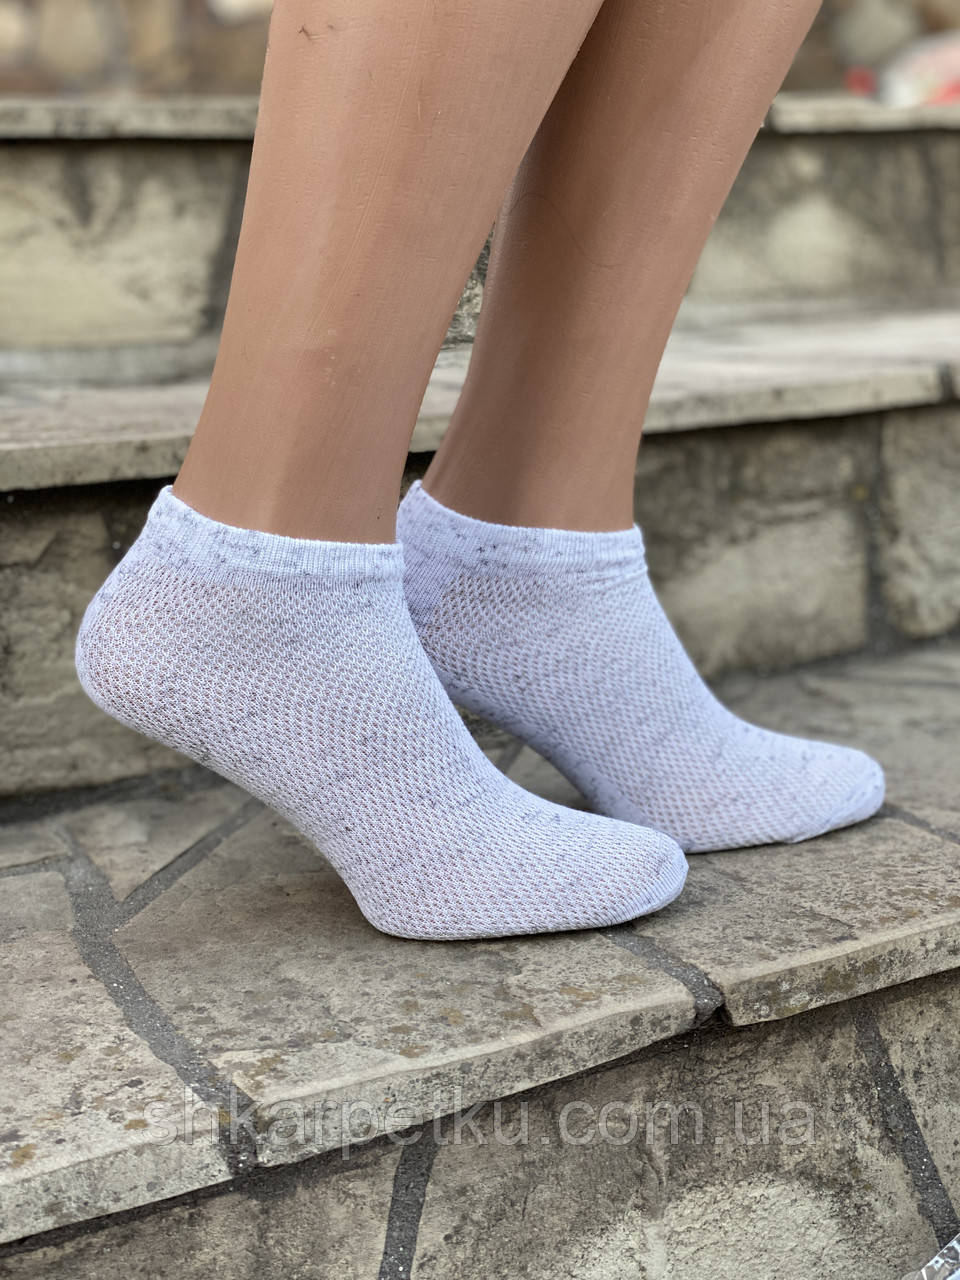 Жіночі короткі шкарпетки в сітку меланжеві розмір 36-39 12 шт в уп біло-сірий меланж